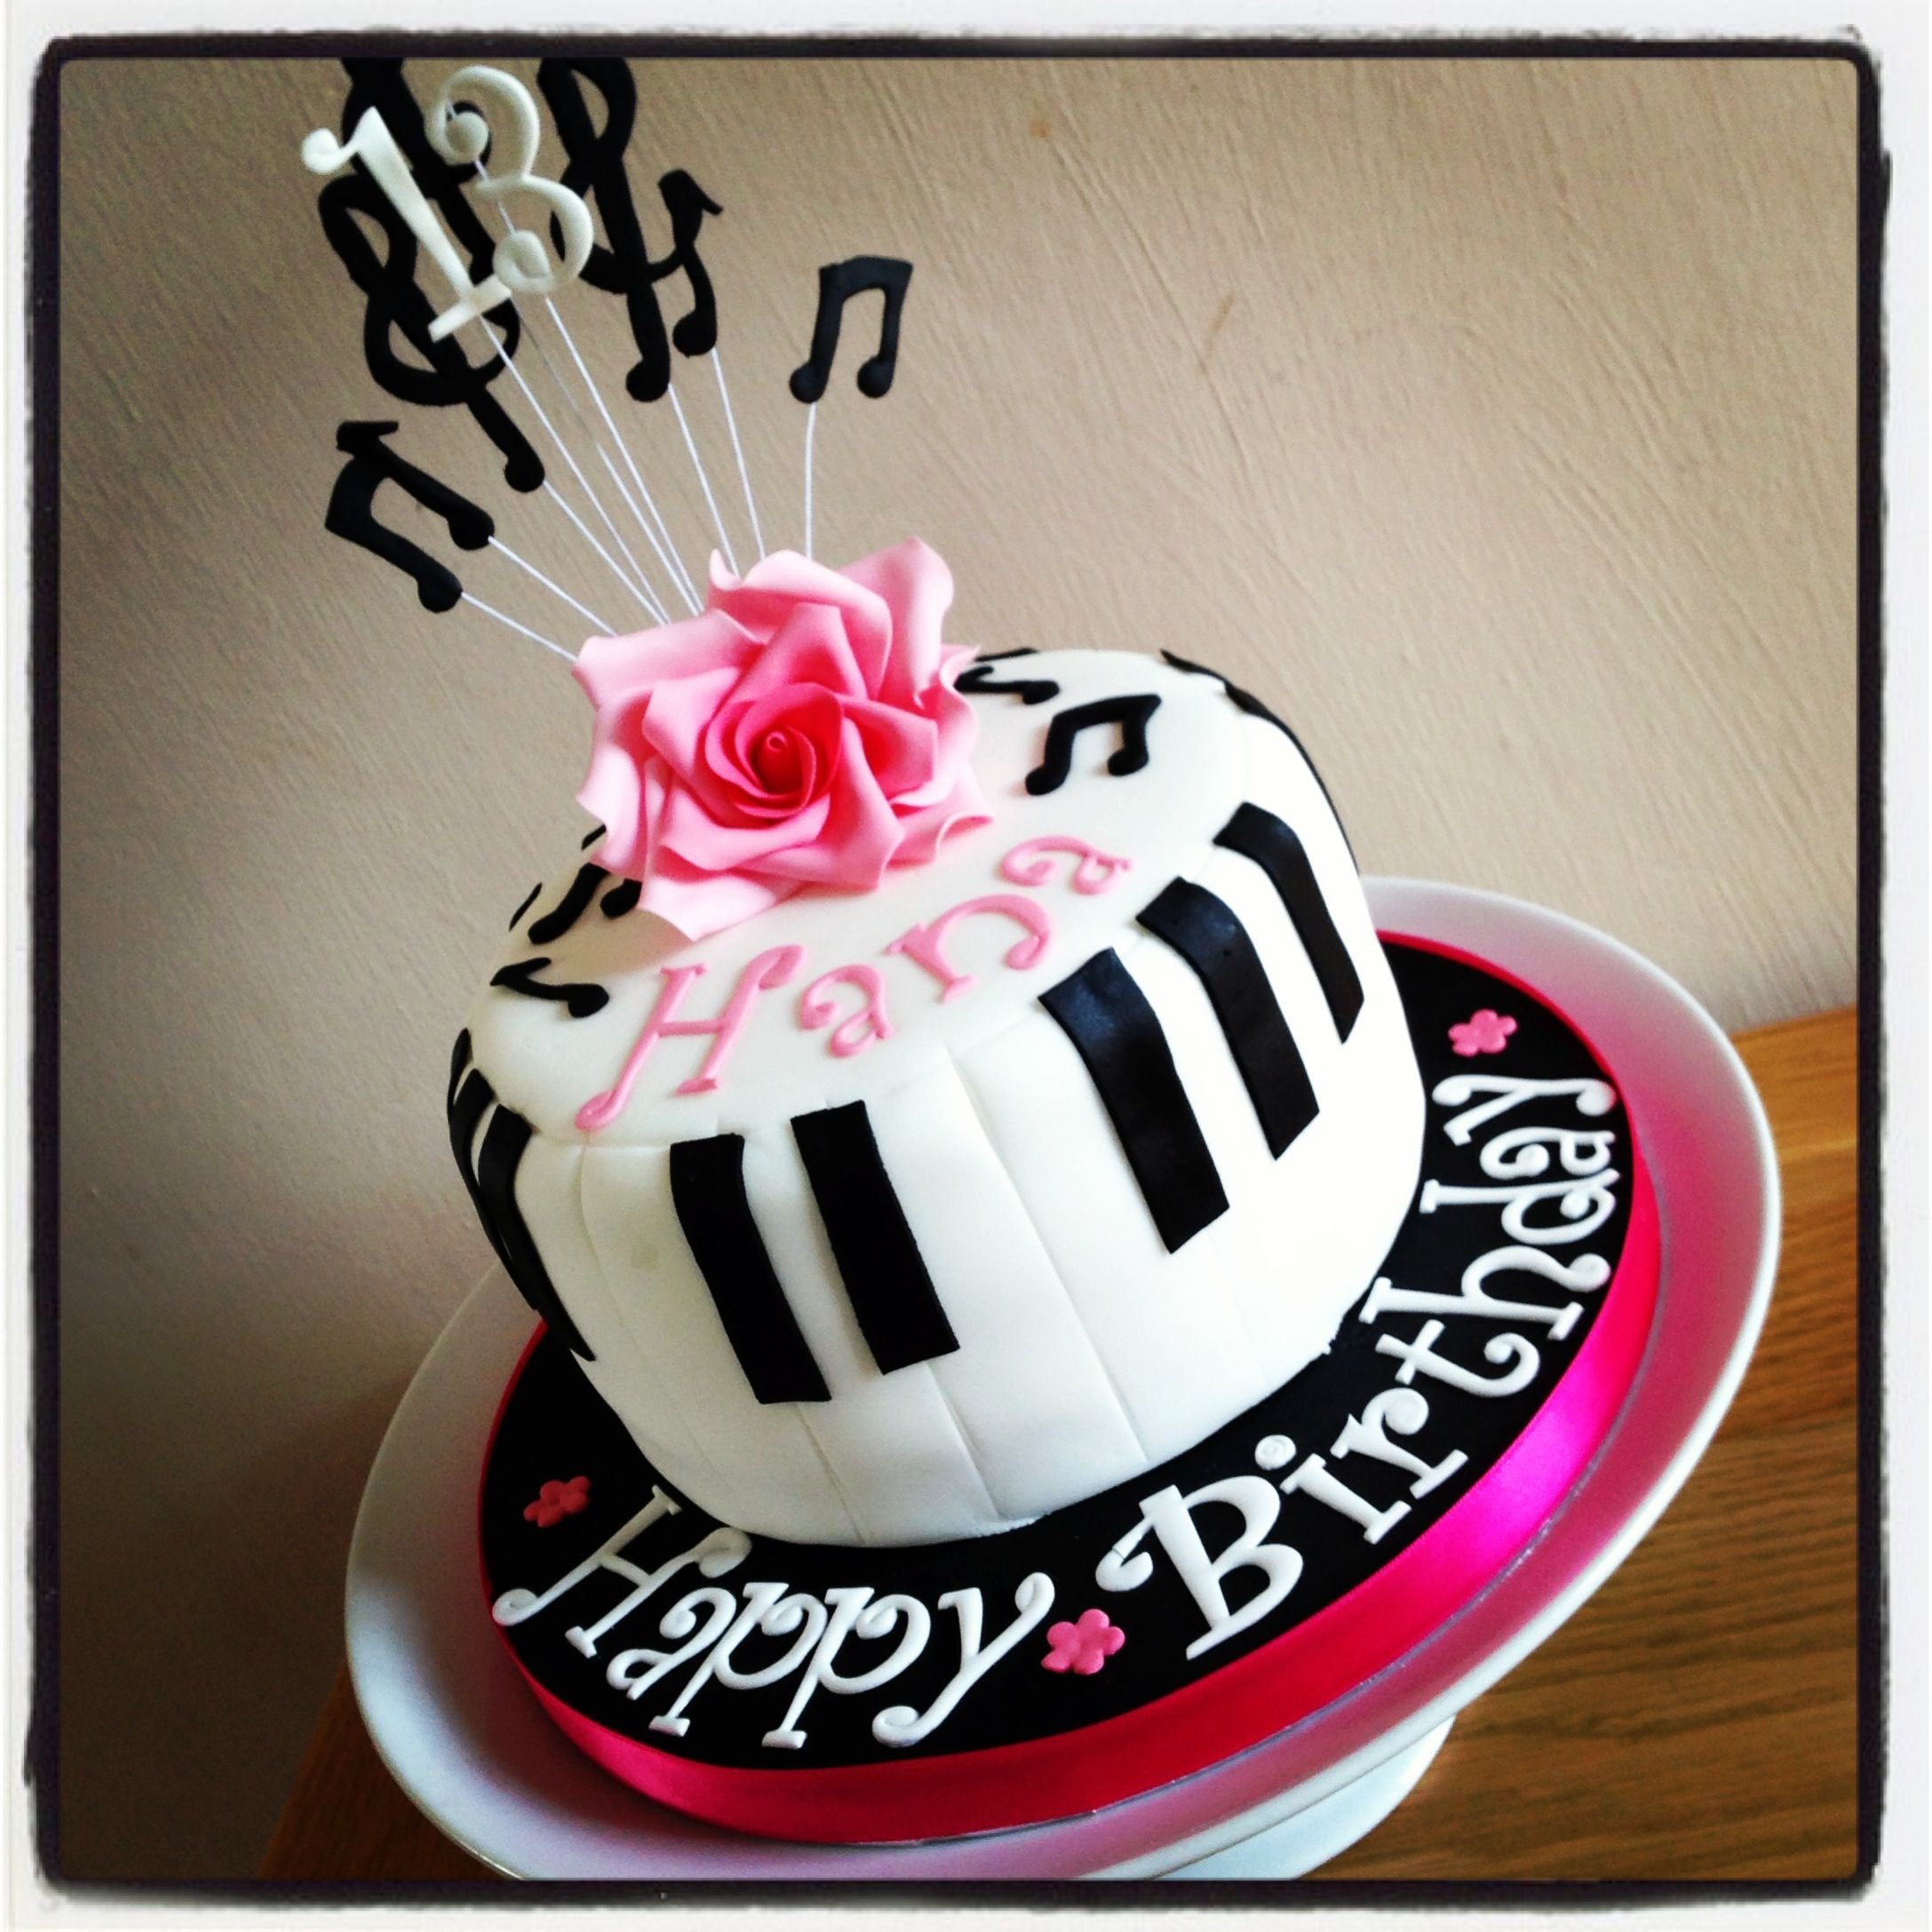 Music Birthday Cake
 Piano music birthday cake